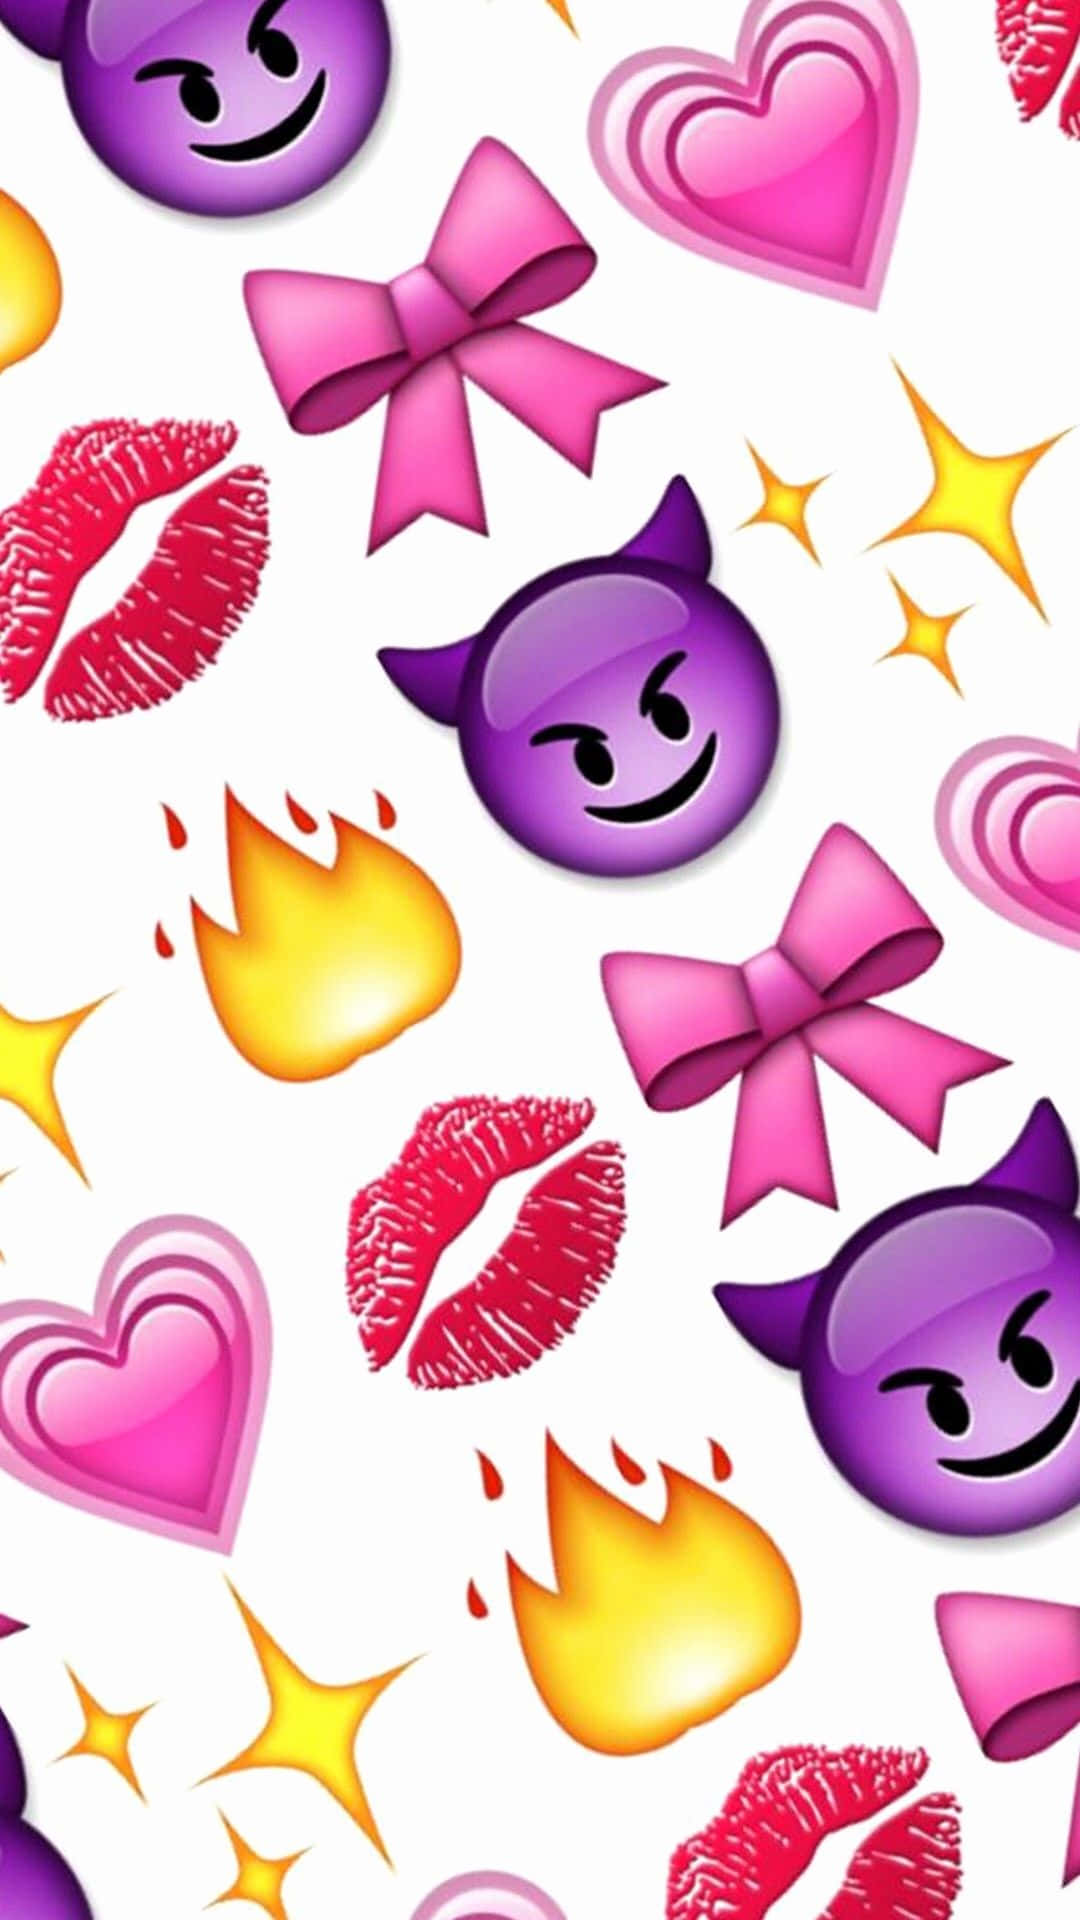 Inviaun Messaggio Speciale Al Tuo Amore Con Un Adorabile Emoji. Sfondo